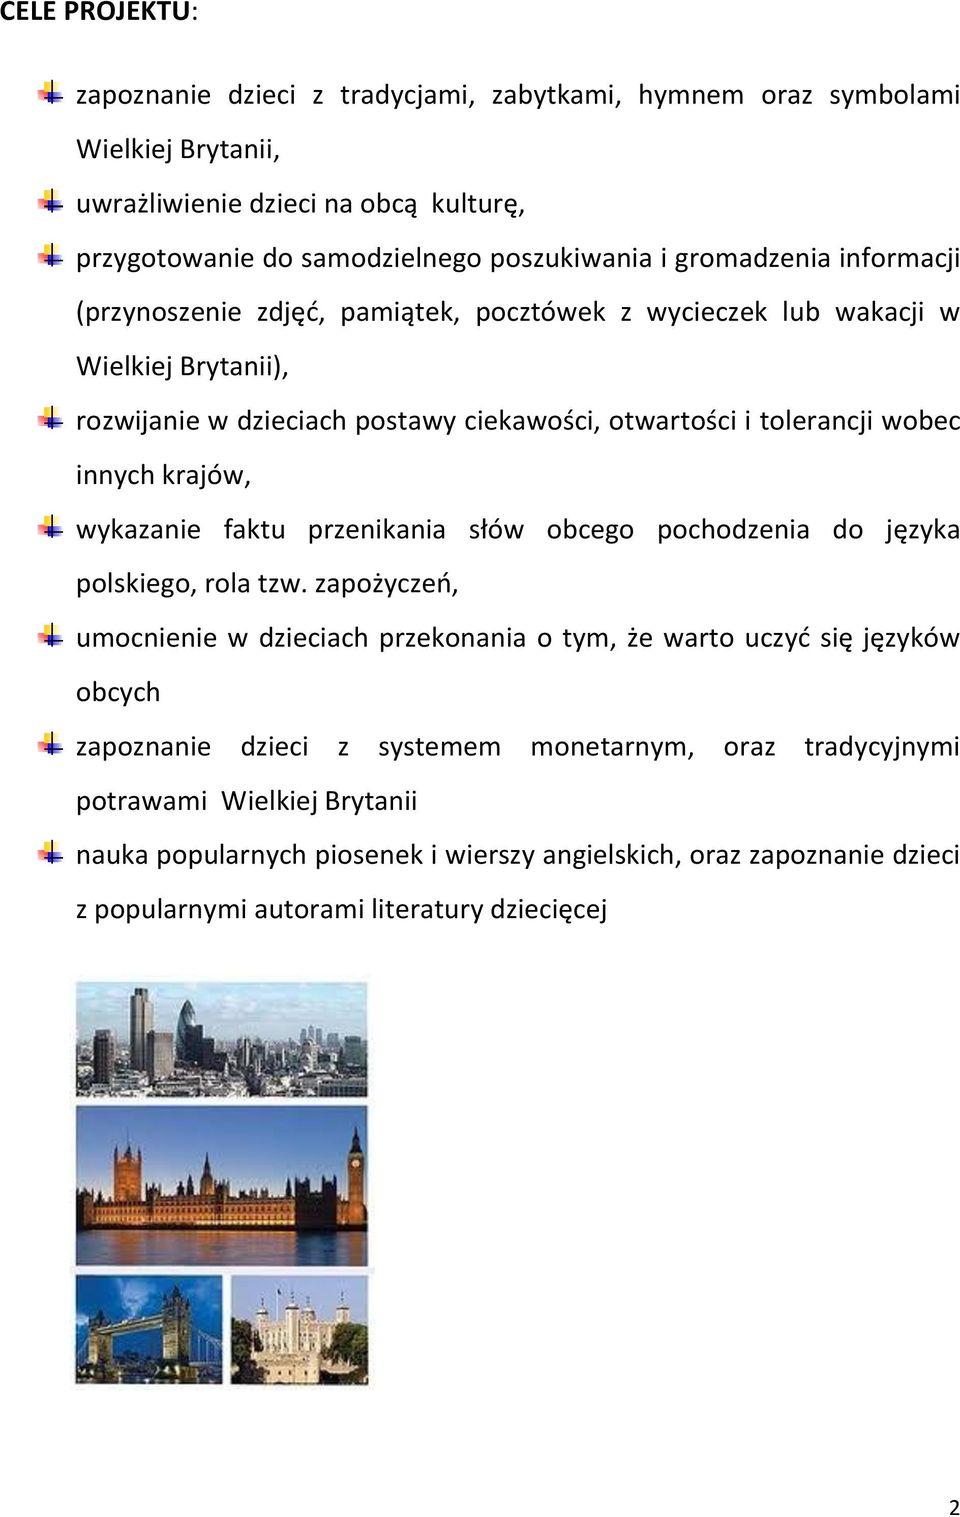 krajów, wykazanie faktu przenikania słów obcego pochodzenia do języka polskiego, rola tzw.